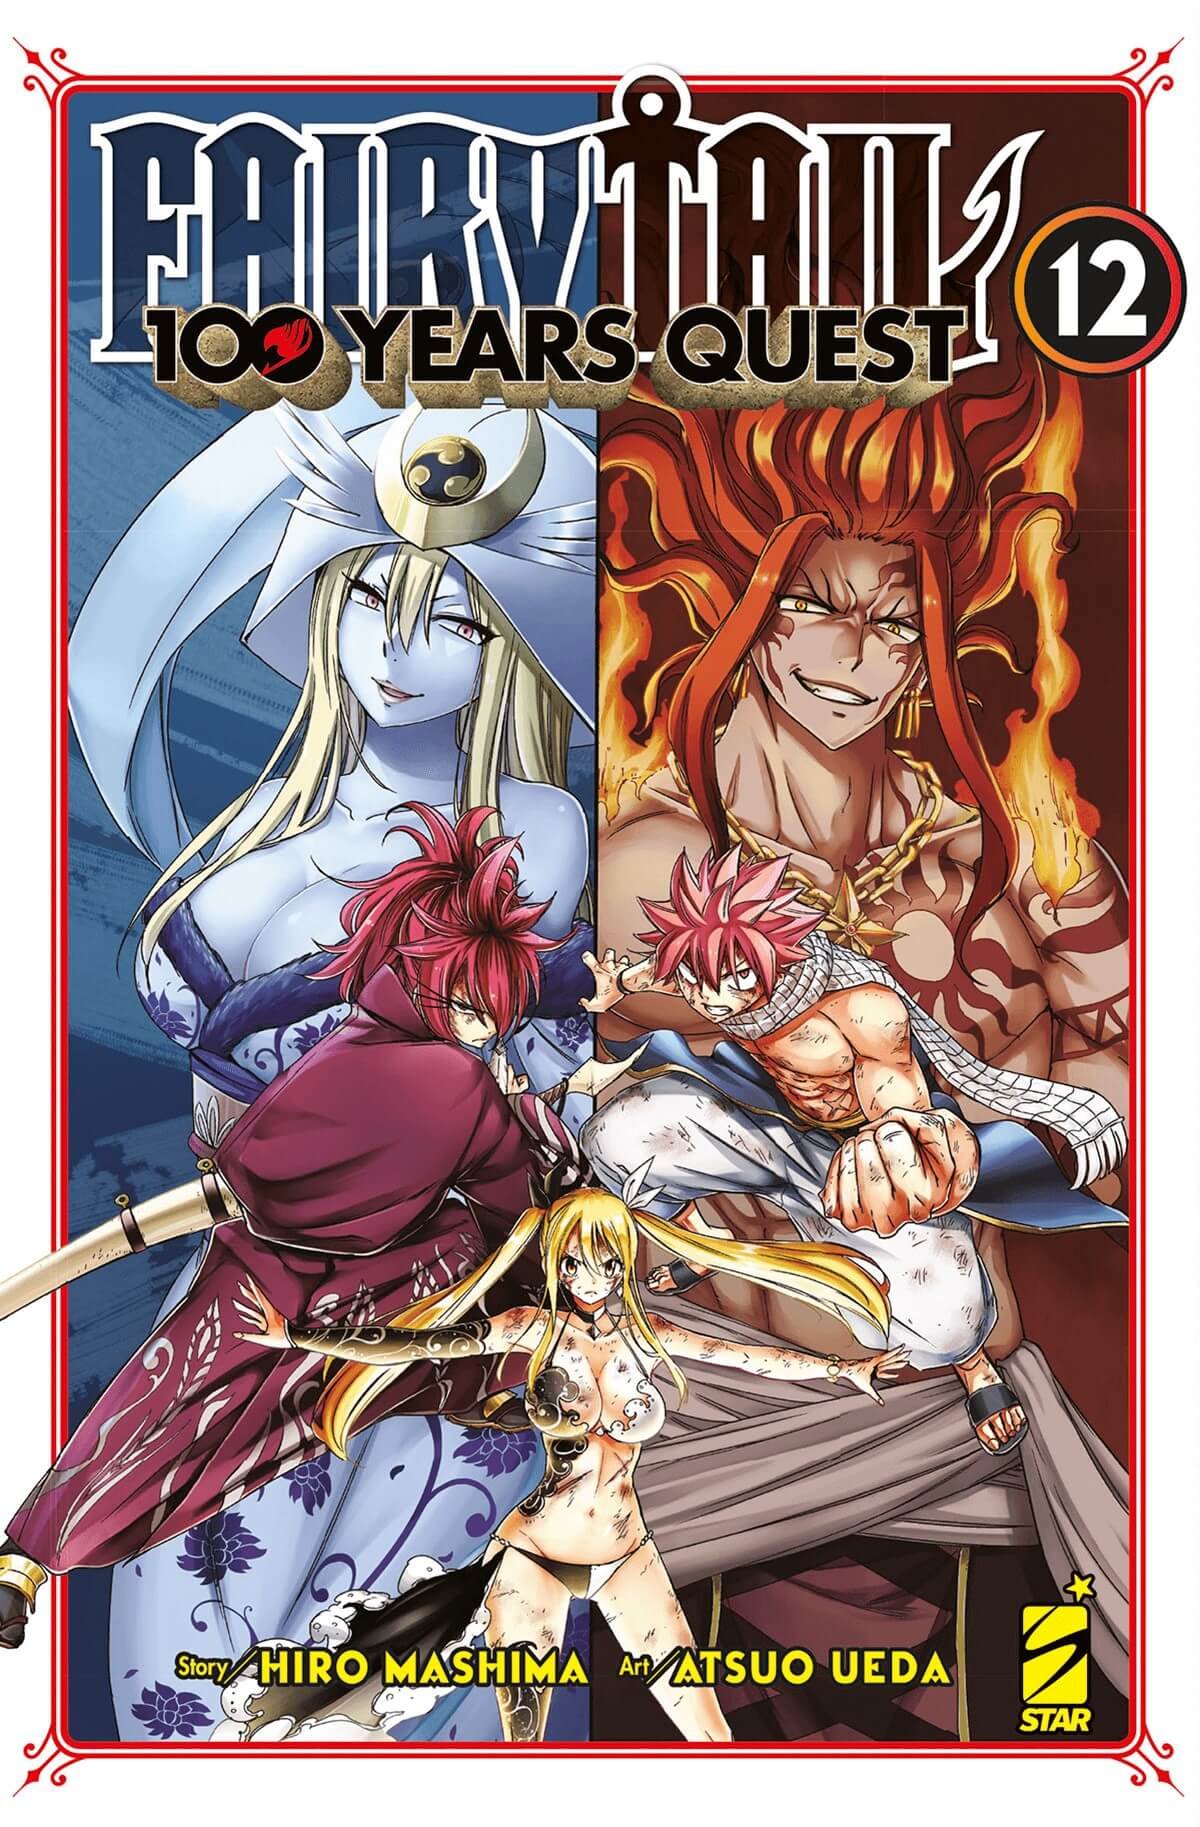 Fairy Tail 100 Years Quest 12, parmi les sorties manga de Star Comics du 1er mars 2023